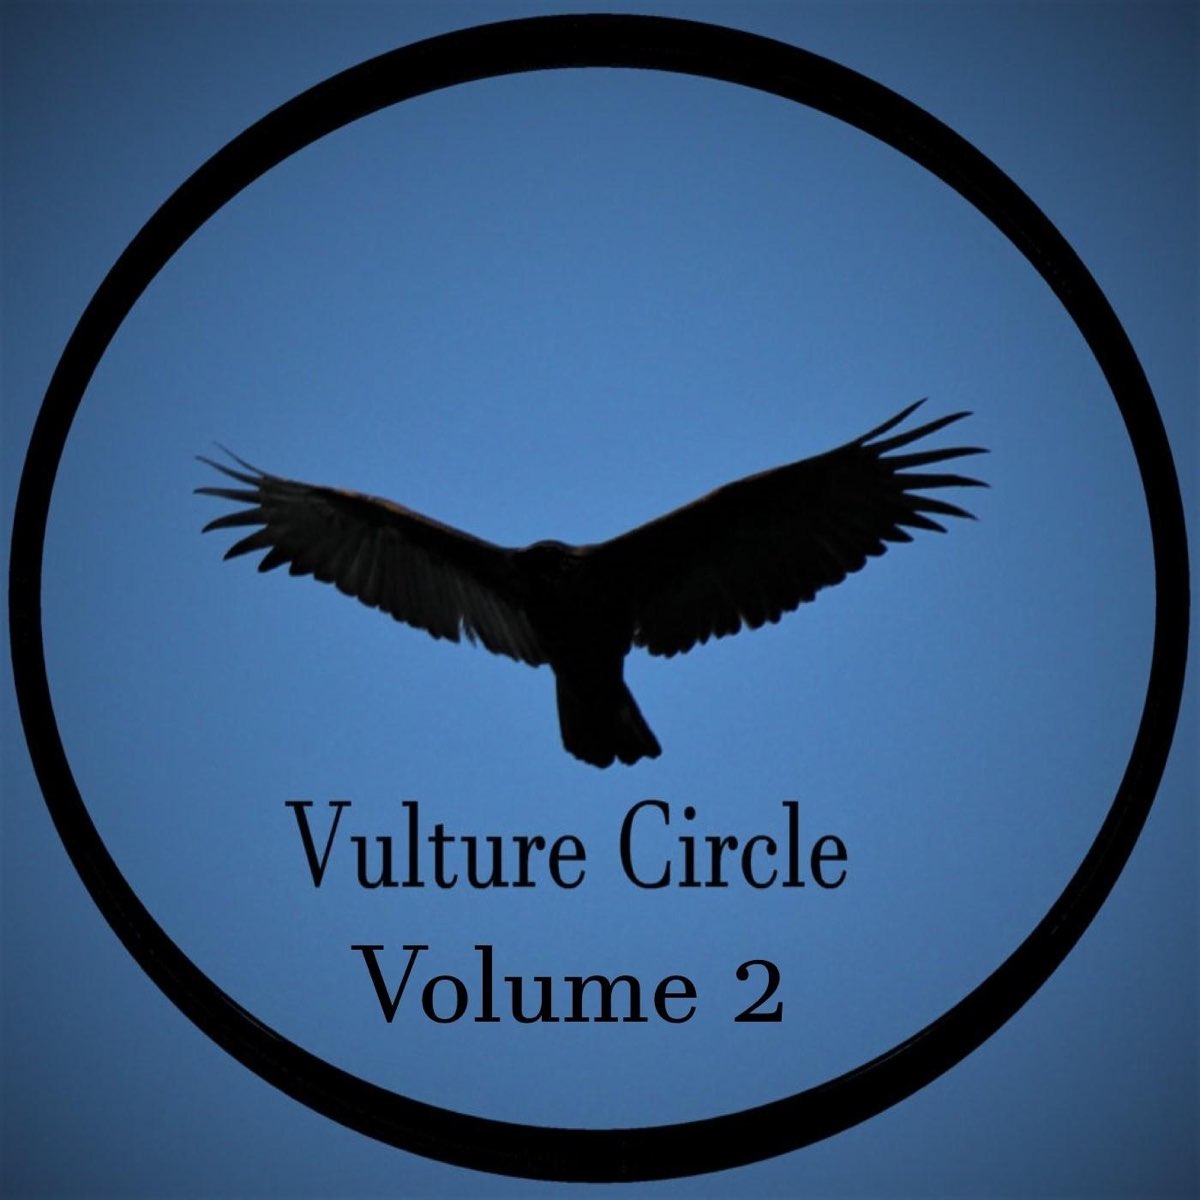 Vultures album. Vultures альбом. Логотип альбома Vultures. Альбом Vultures 1. Vultures Gathering группа обложка альбома.